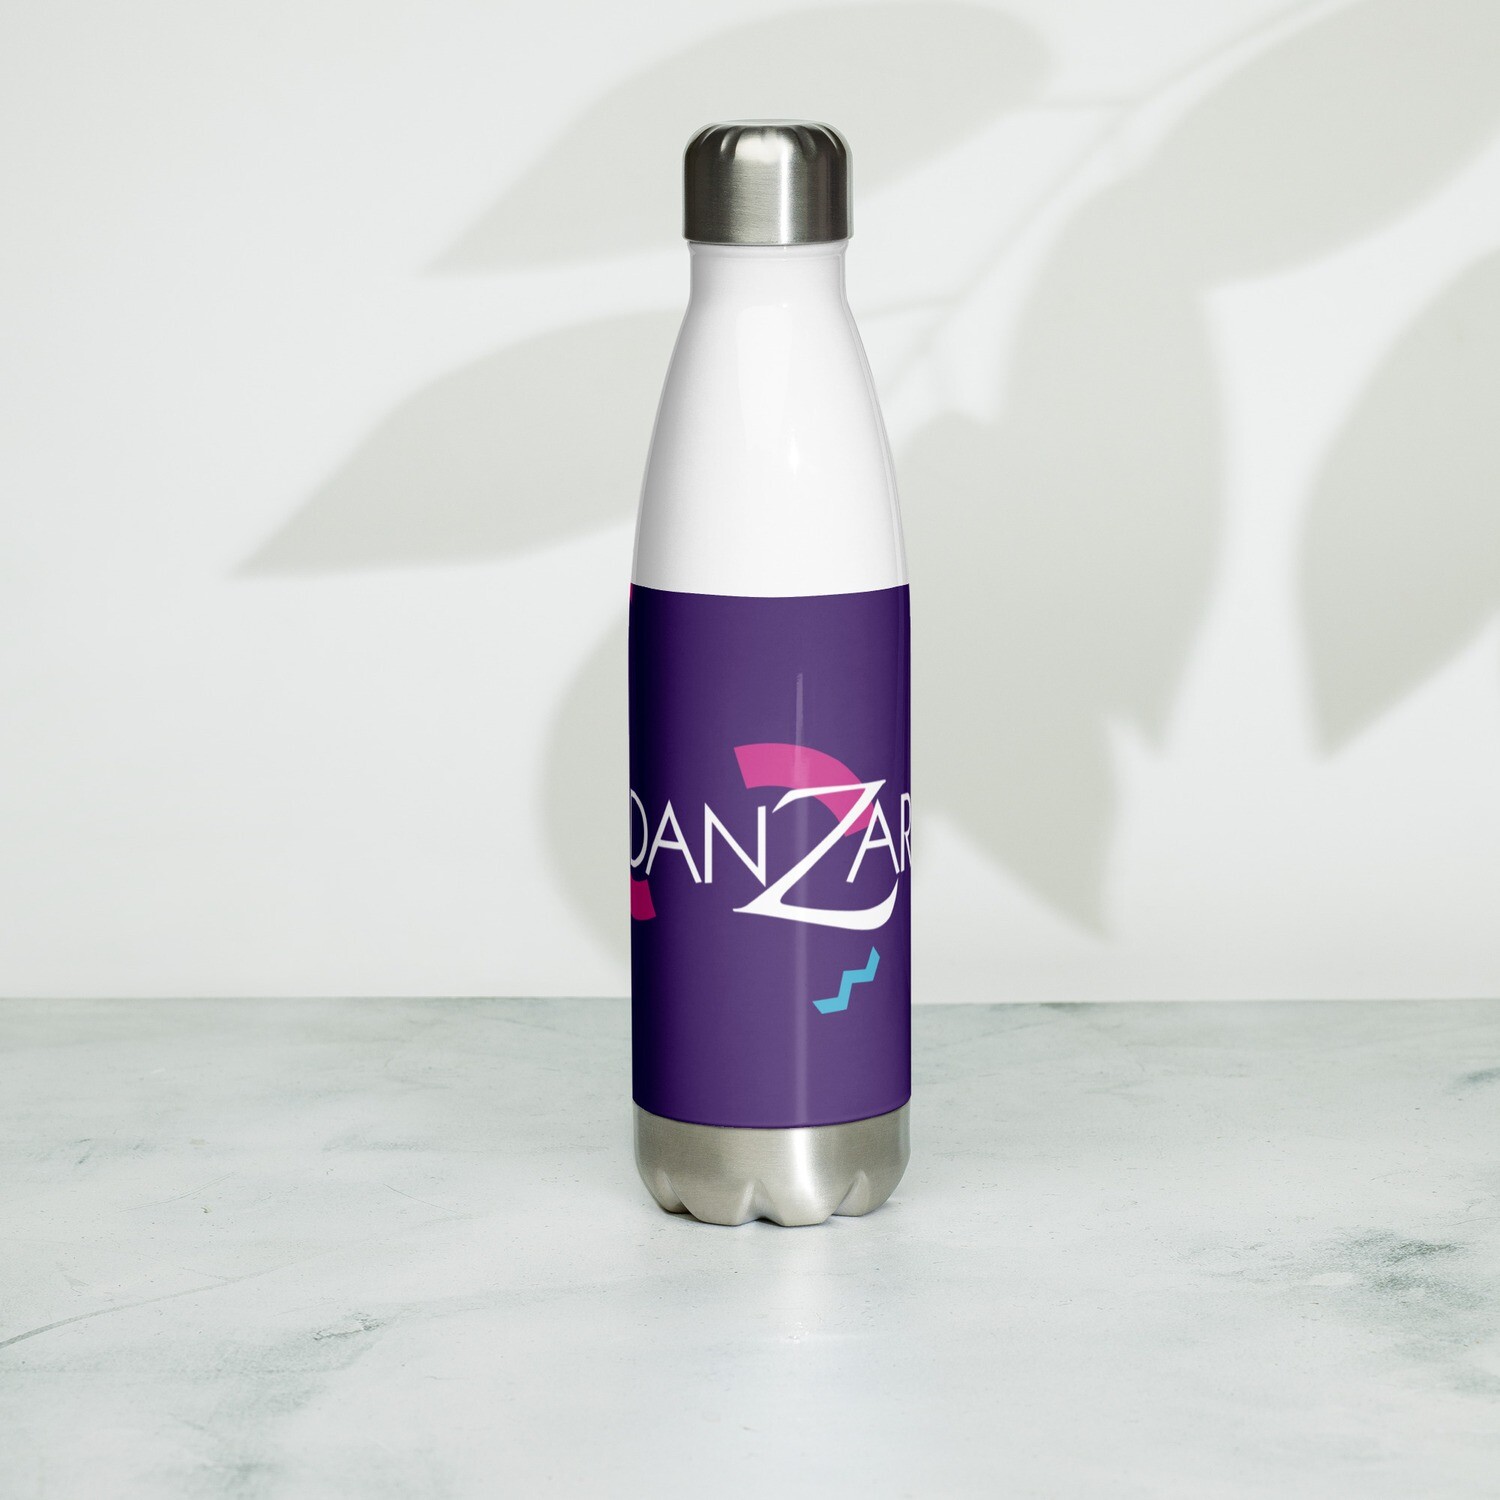 Danzar Stainless Steel Water Bottle